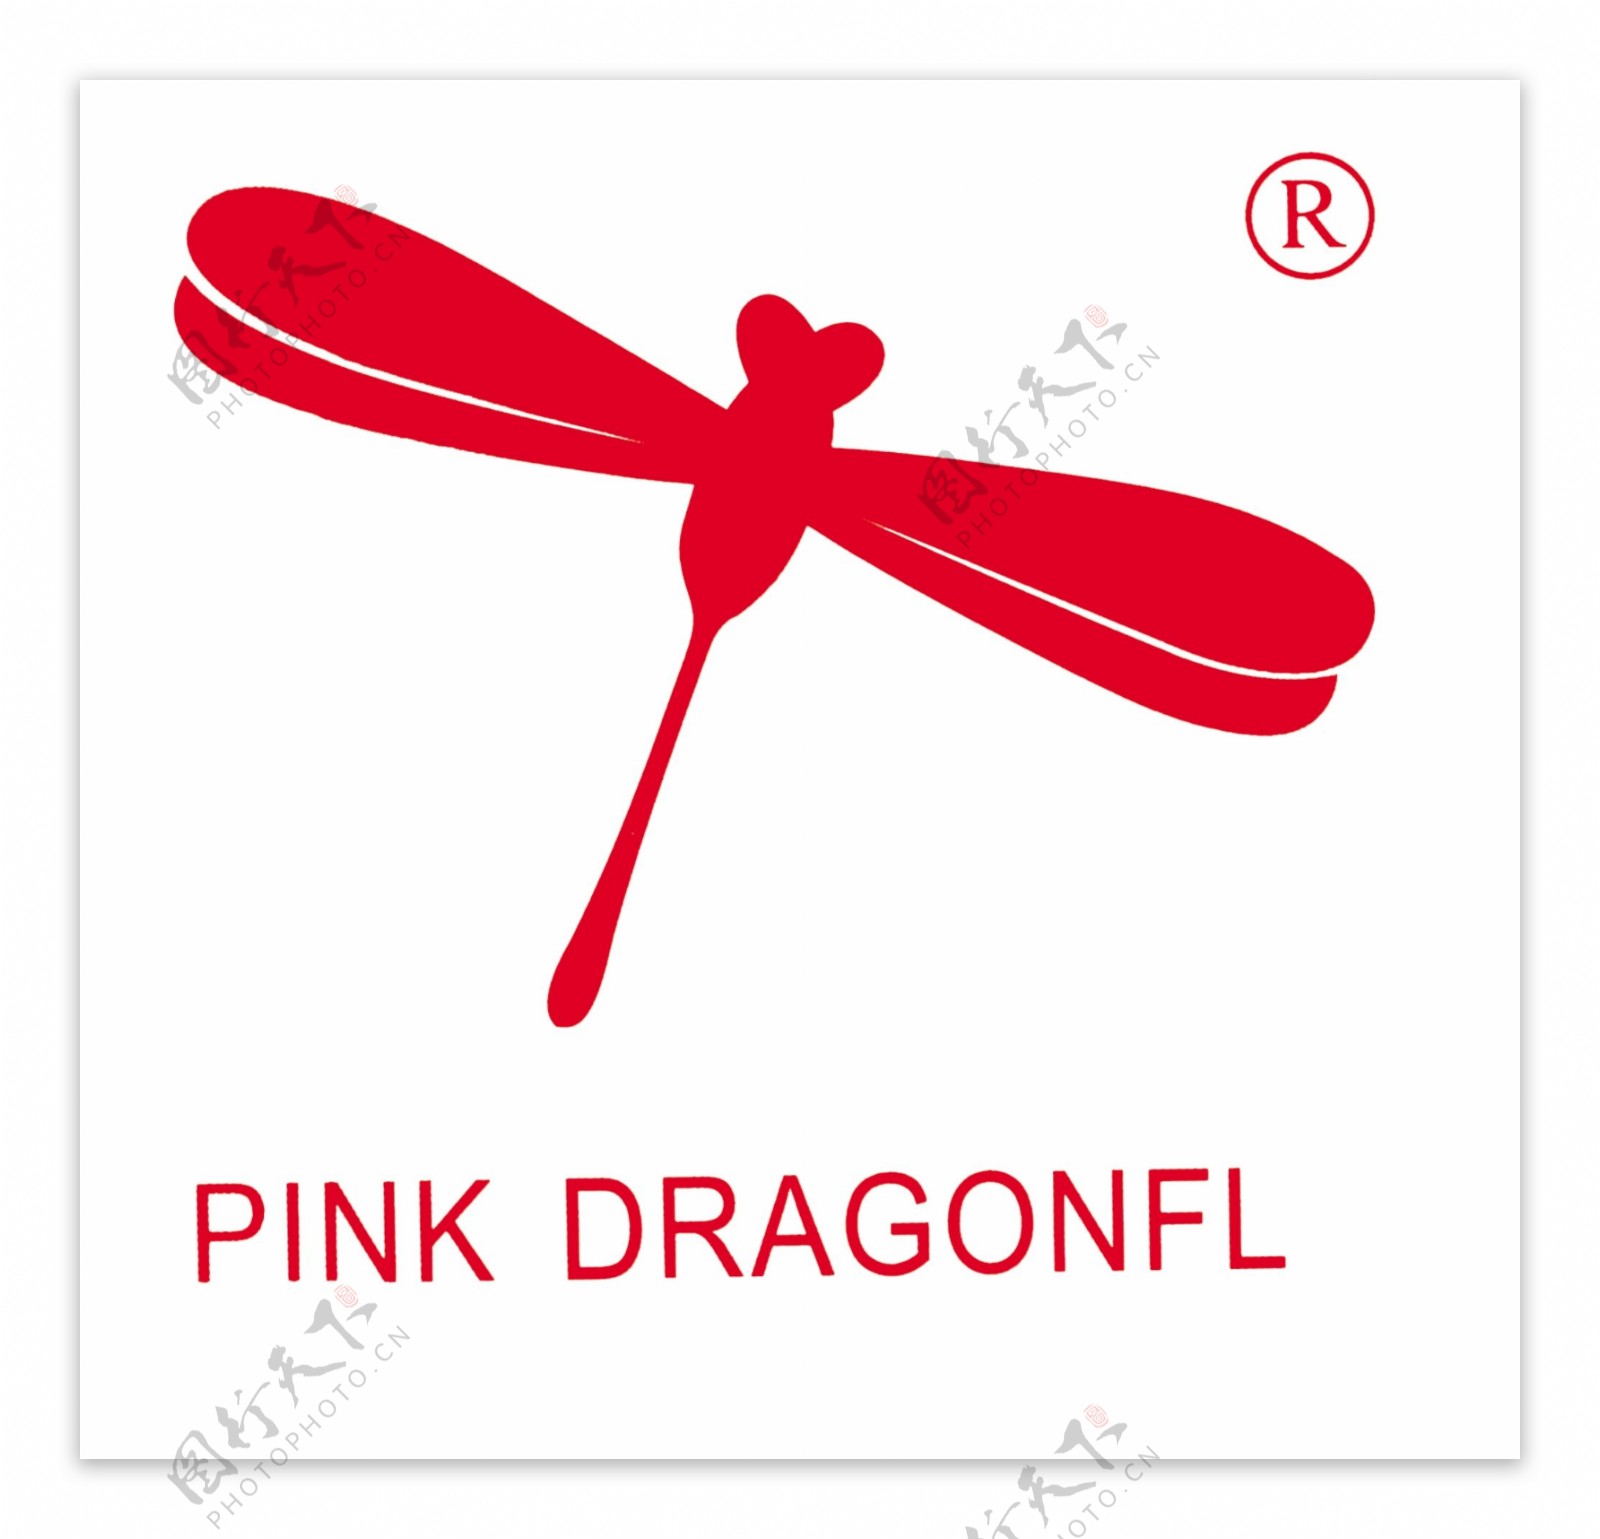 红蜻蜓标志